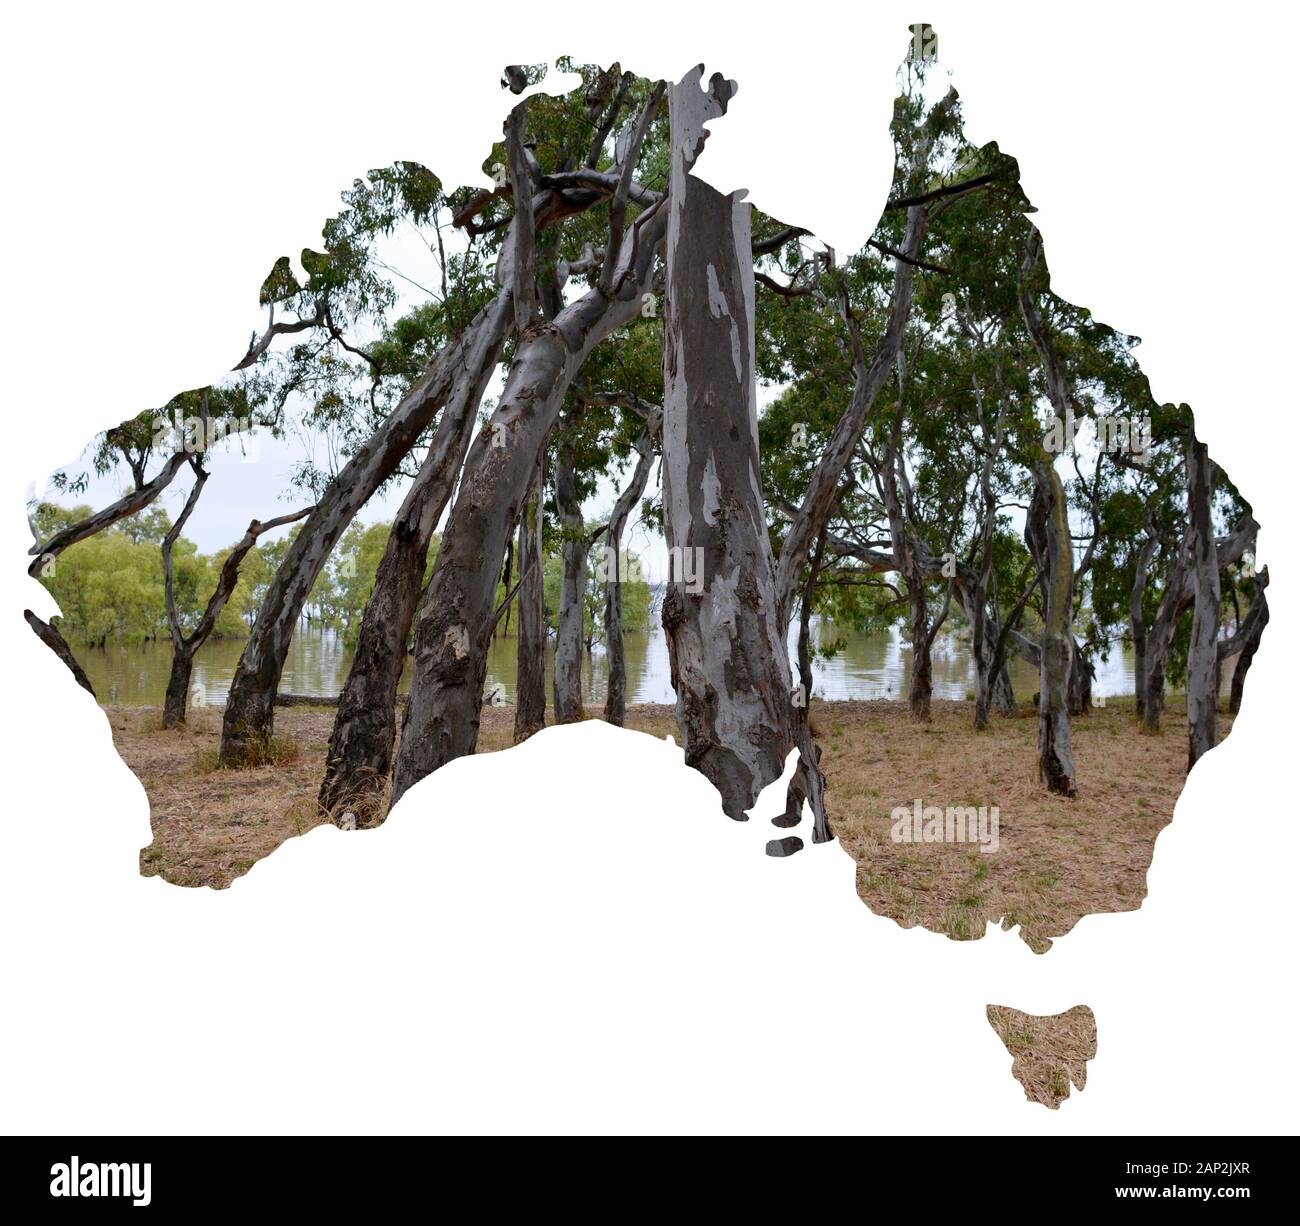 Una serie Di Vedute dei paesaggi naturali e dei paesaggi dell'Australia si sono stabiliti in una mappa degli alberi nazionencurvati Foto Stock